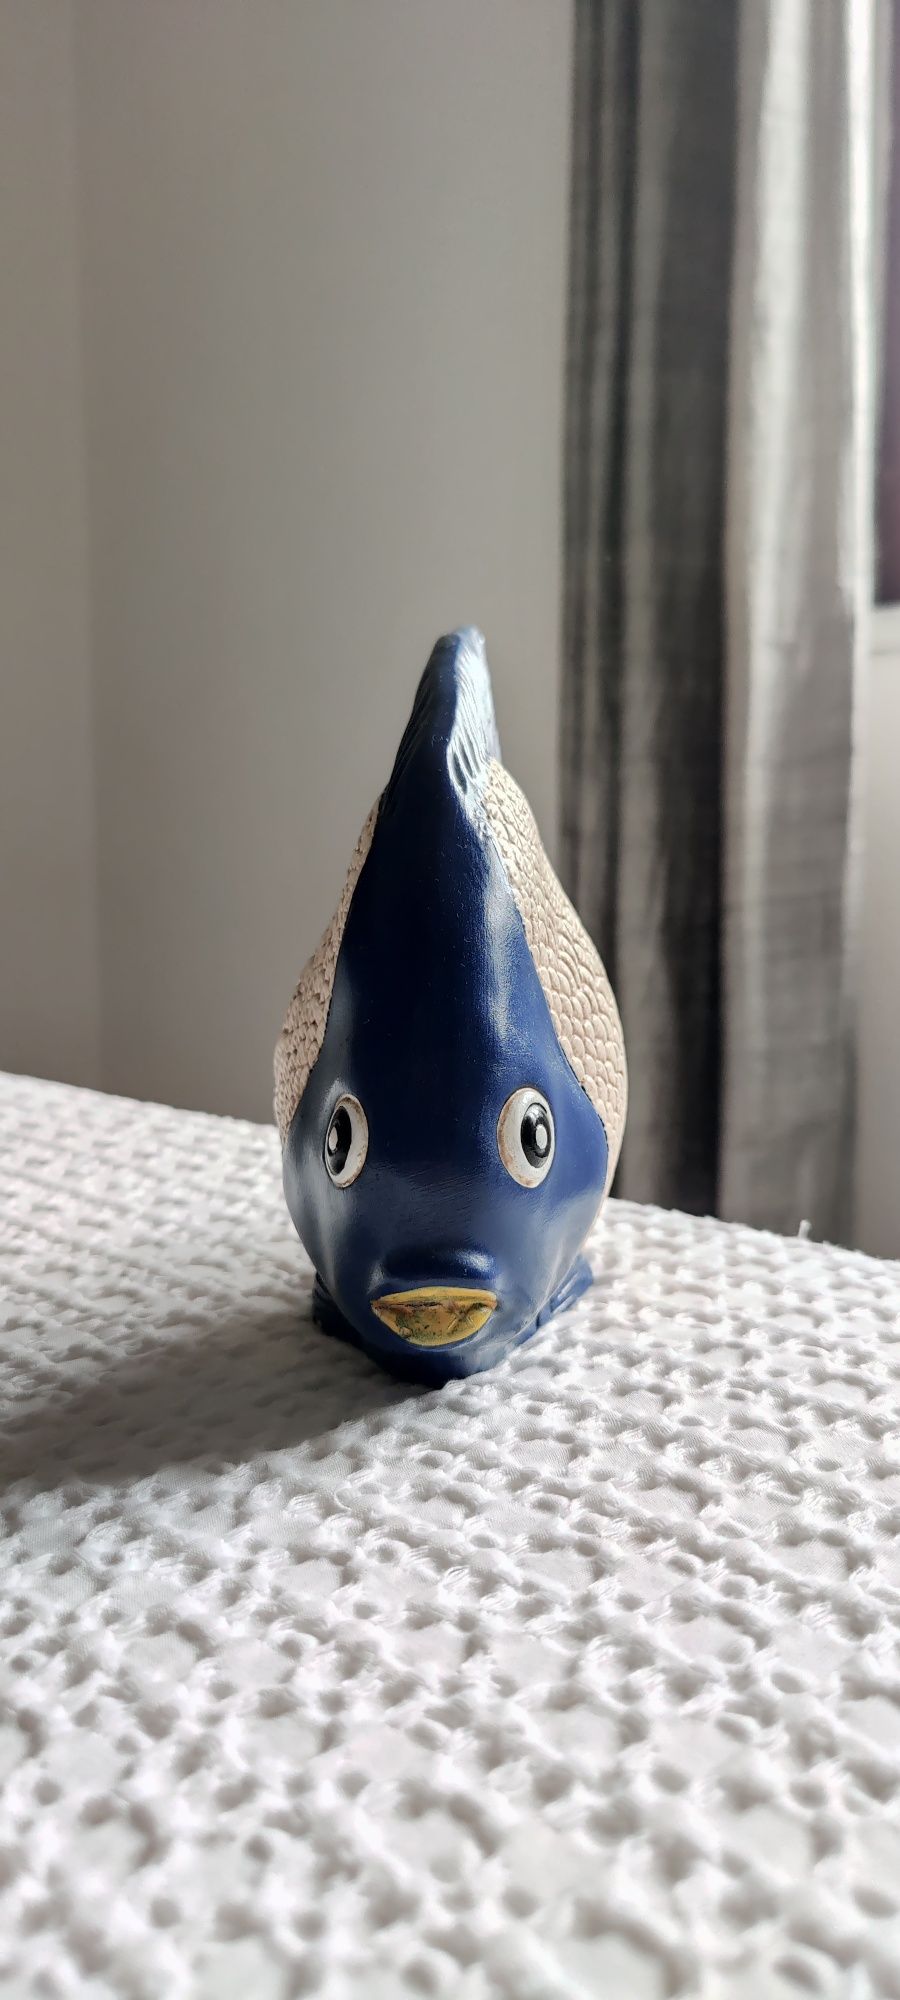 Bibelot decorativo peixe de cerâmica - azul, bege e amarelo